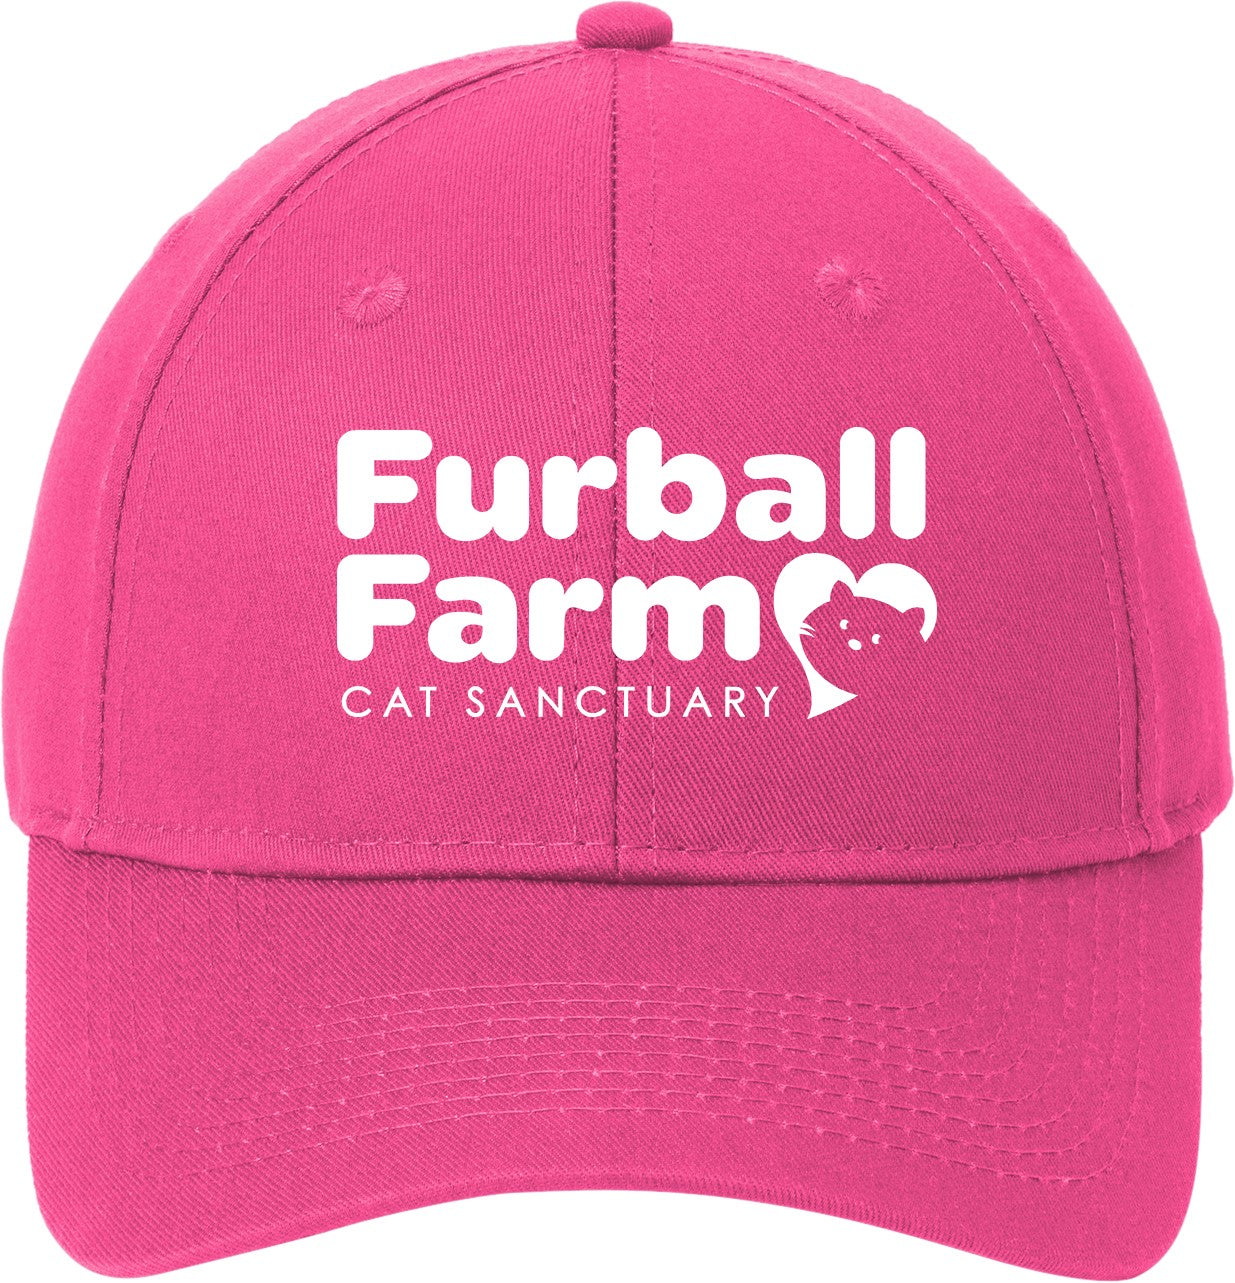 Baseball Cap by Port & Company® - Embroidered Furball Farm Logo